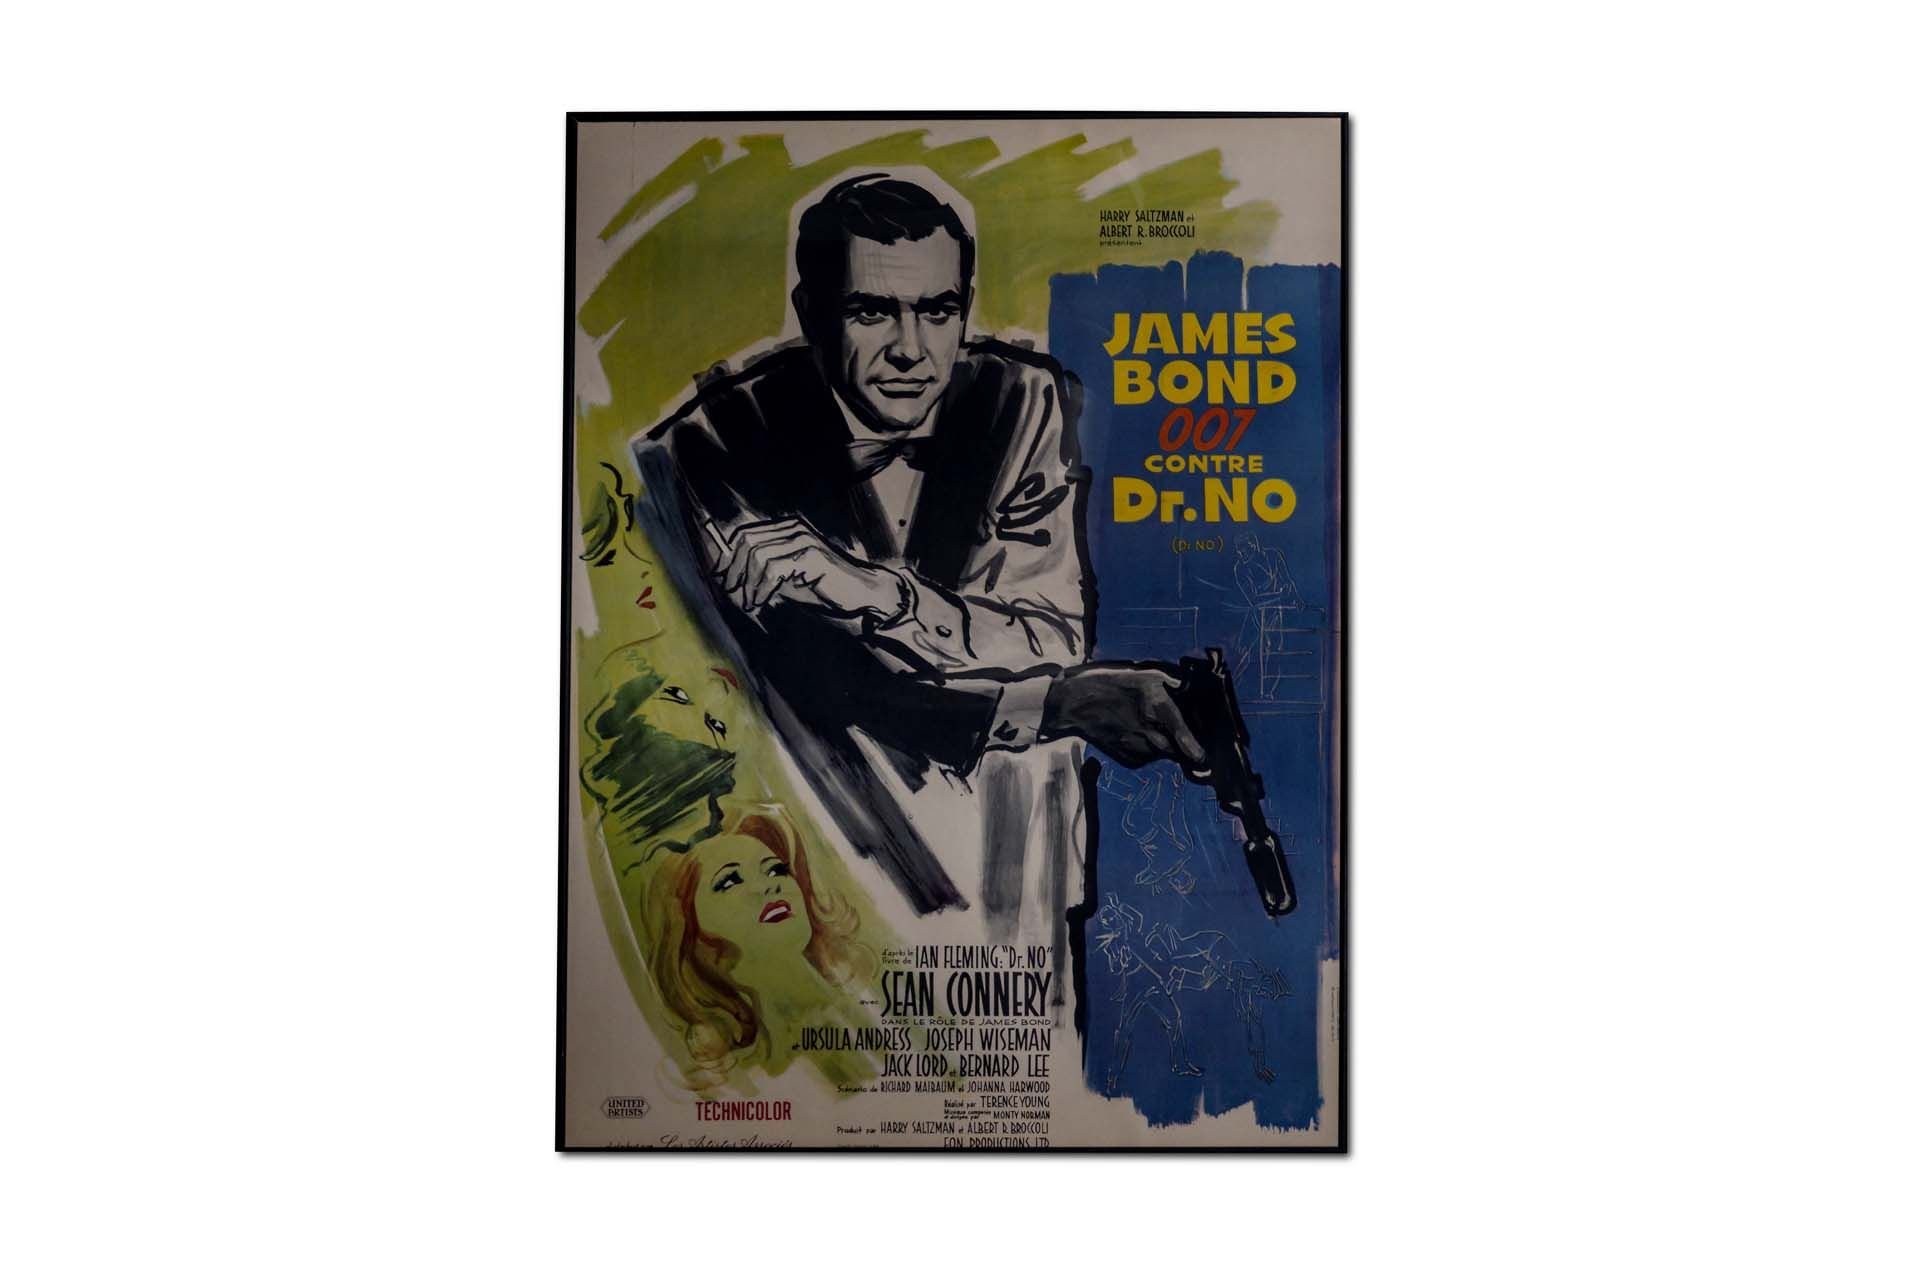 For Sale Large Framed Blue Variant ' James Bond 007 French Dr. No' Movie Poster